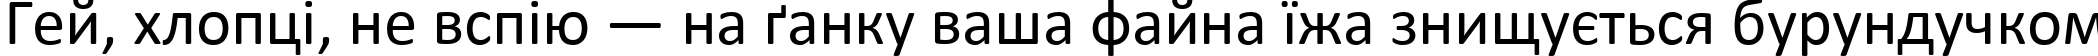 Пример написания шрифтом Calibri текста на украинском